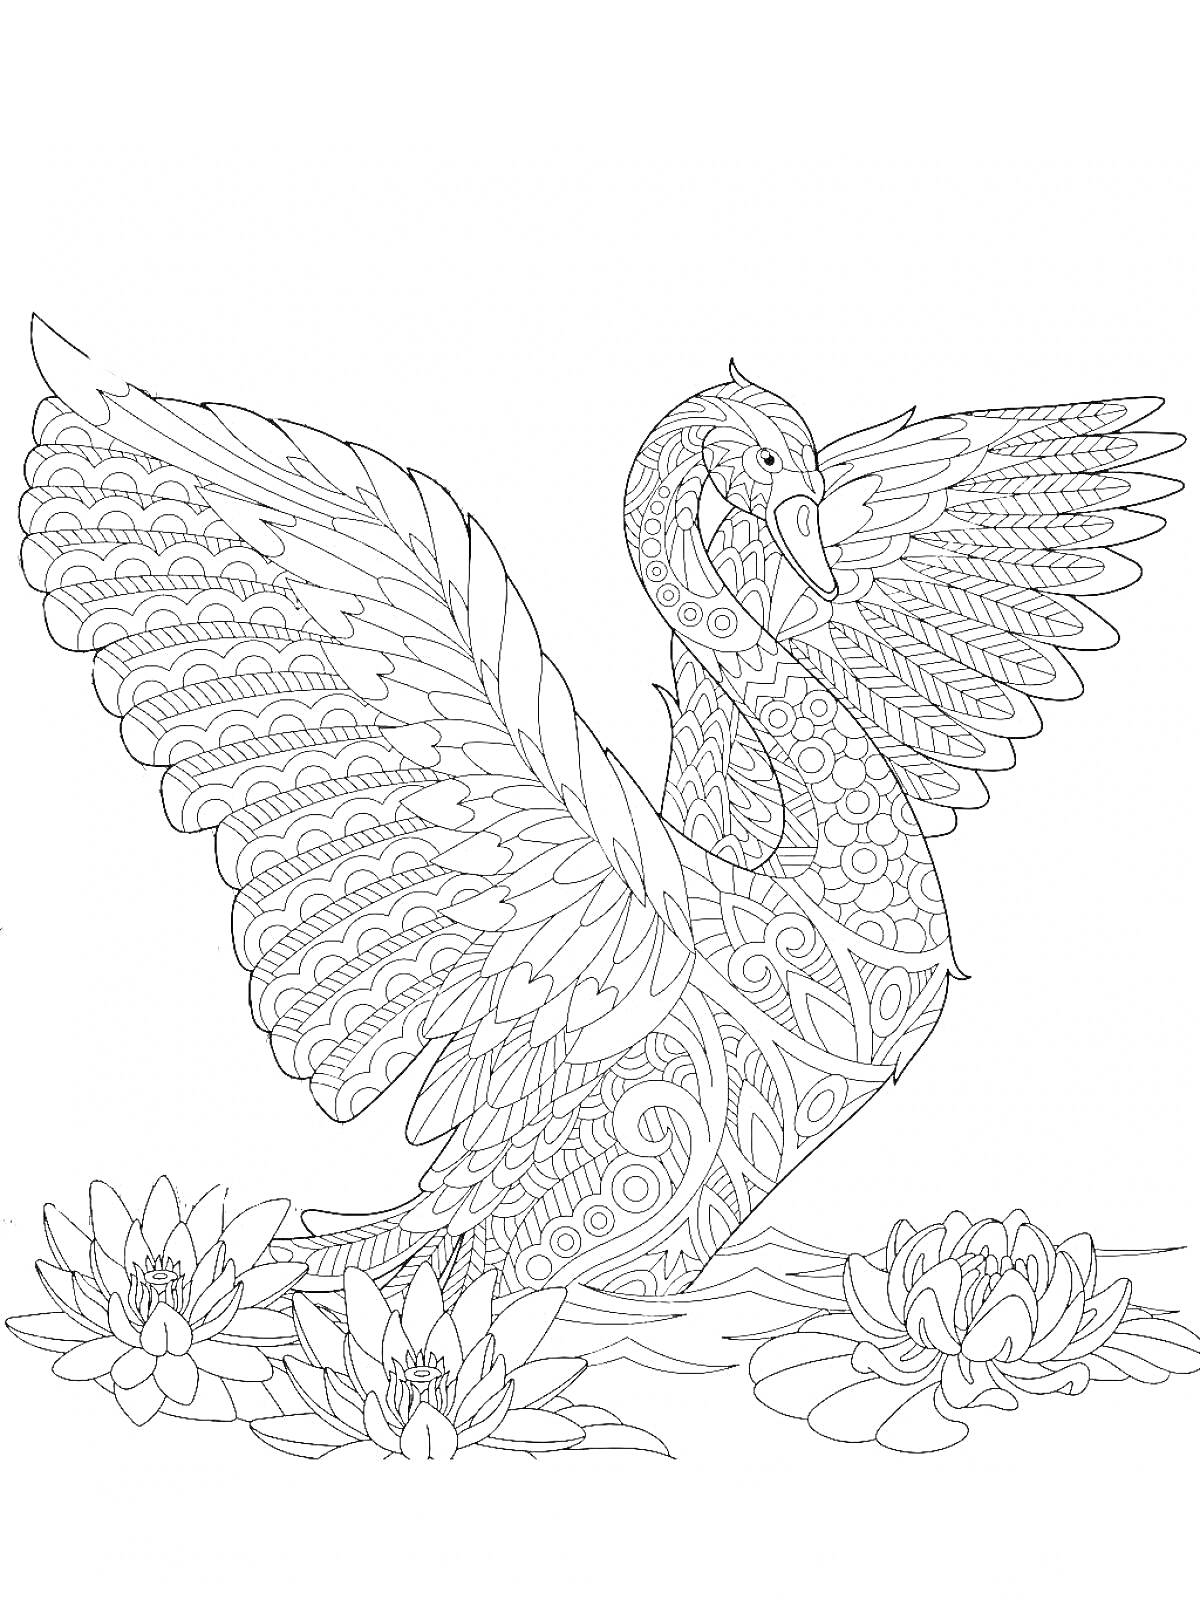 Раскраска Лебедь с антисрессовыми узорами на фоне водяных лилий